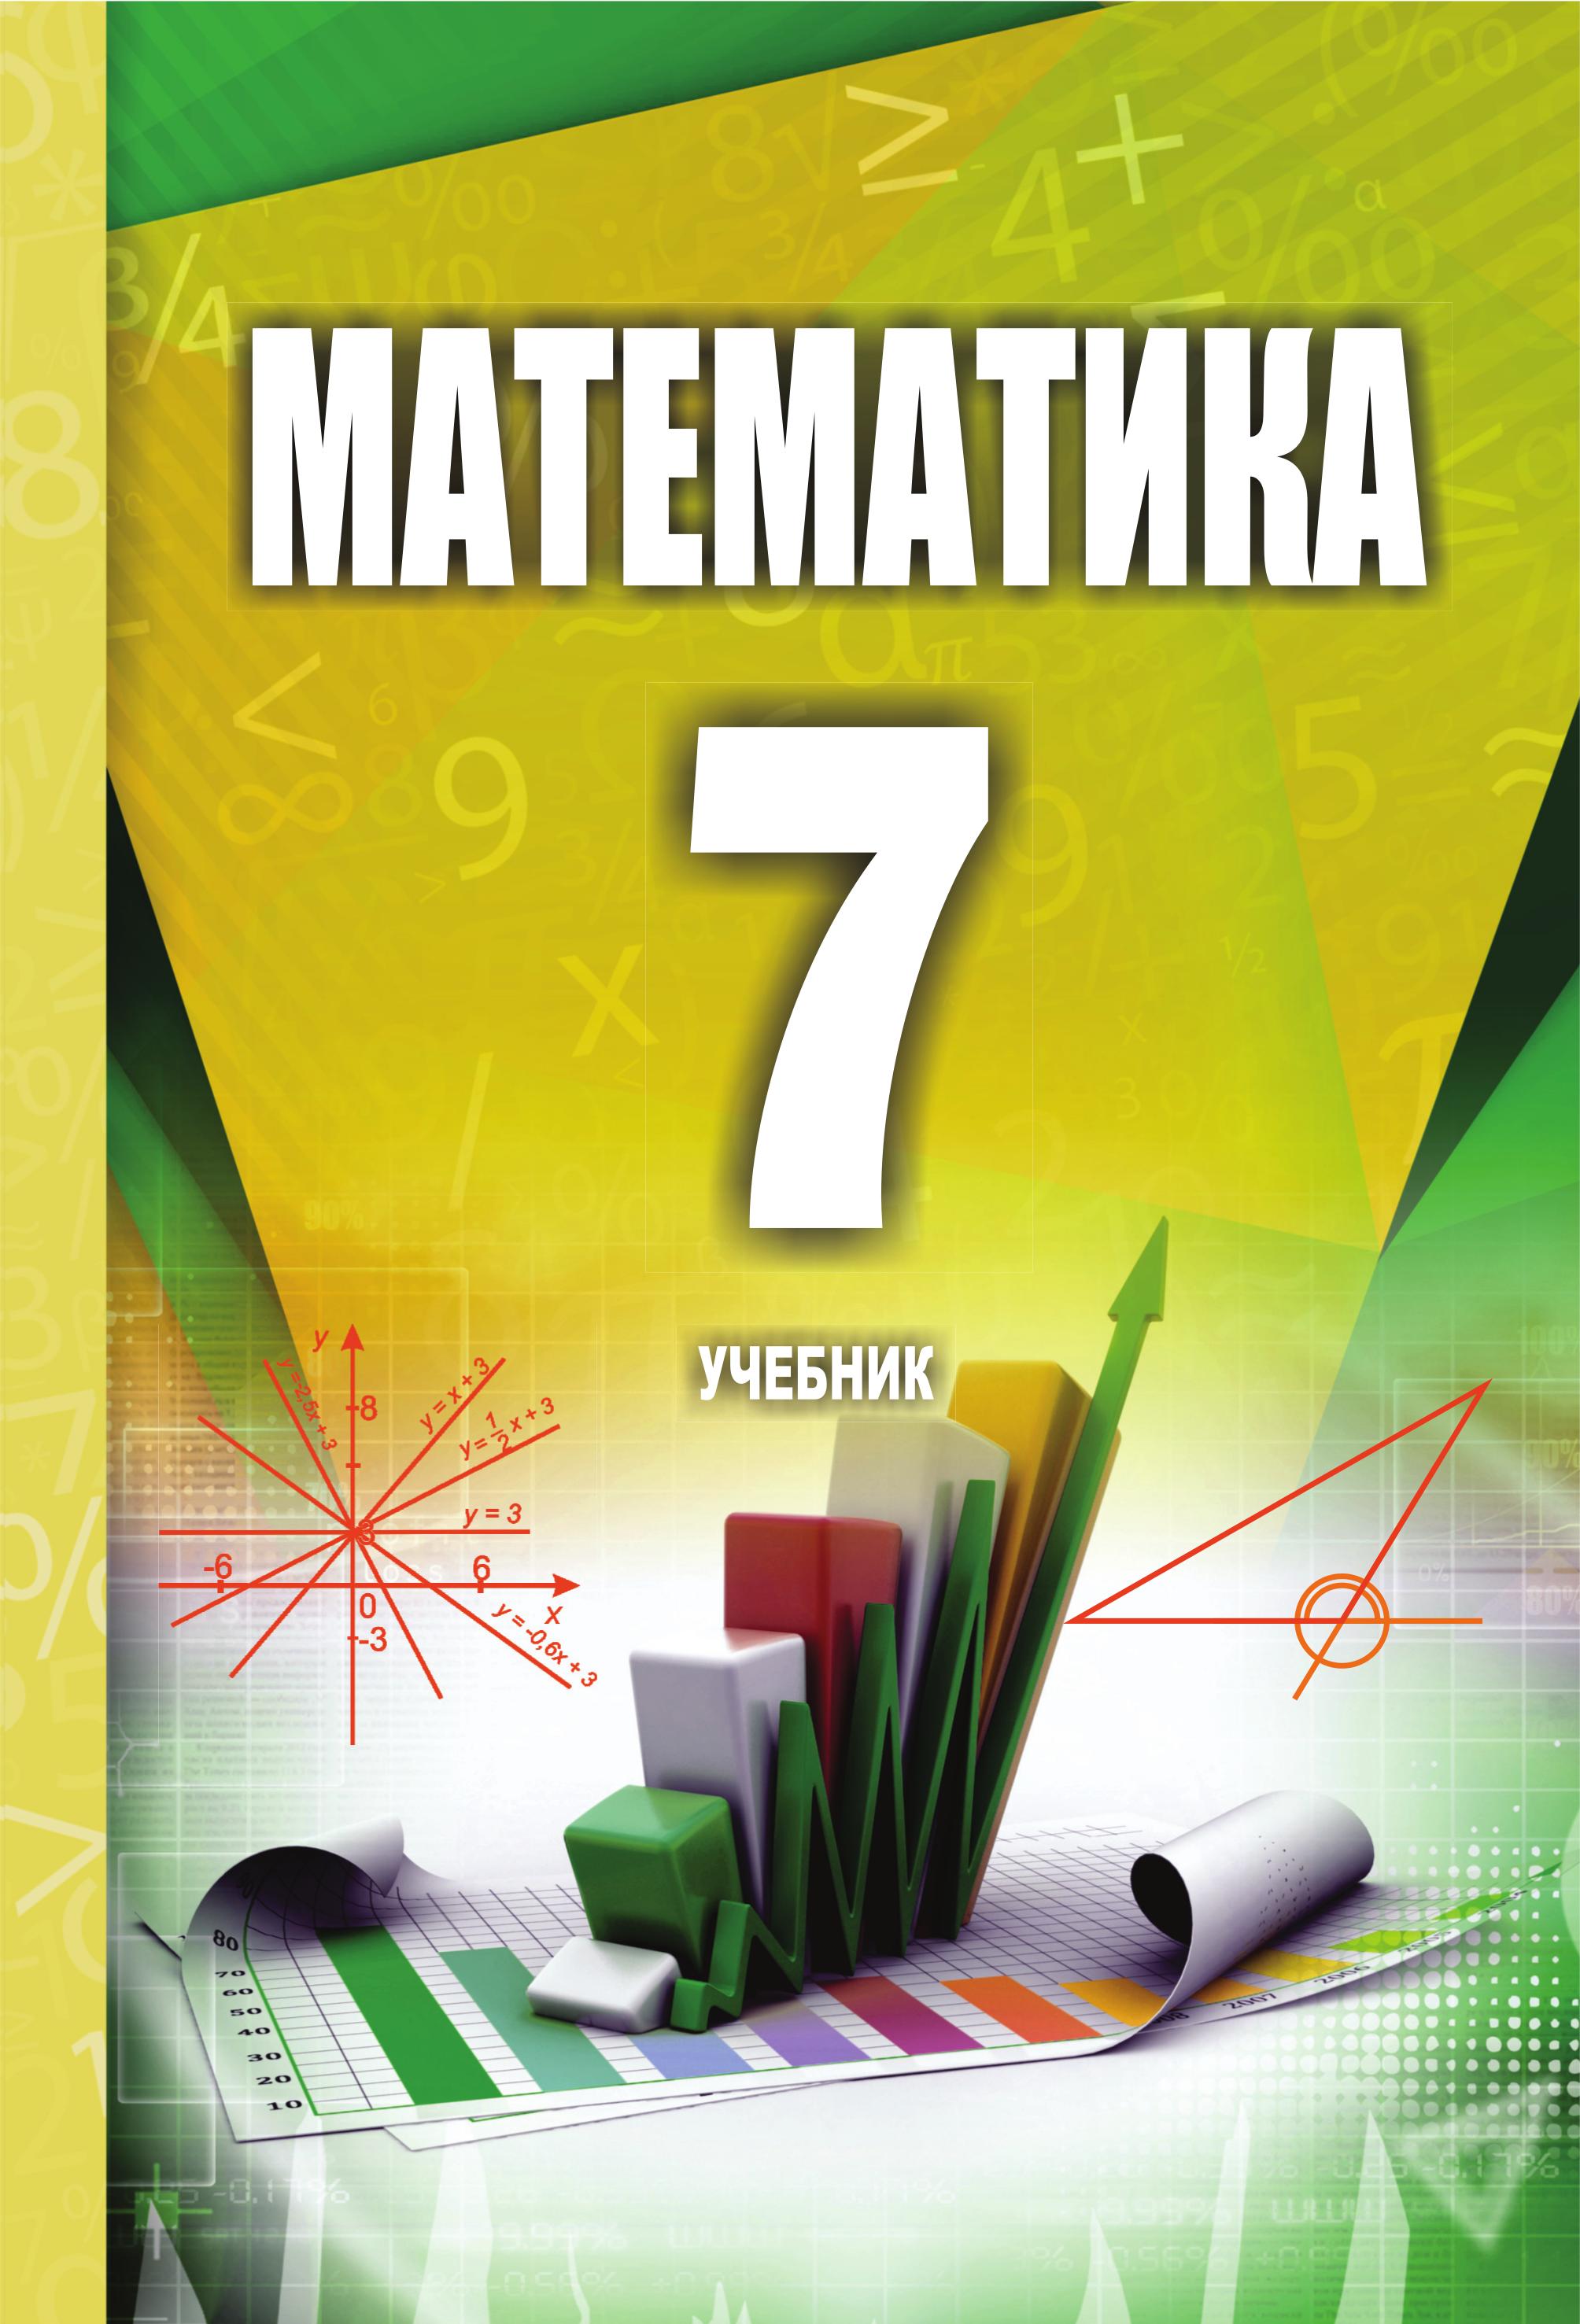 Математика 7 класс - Исмайылова С. - Класс учебник | Академический школьный учебник скачать | Сайт школьных книг учебников uchebniki.org.ua